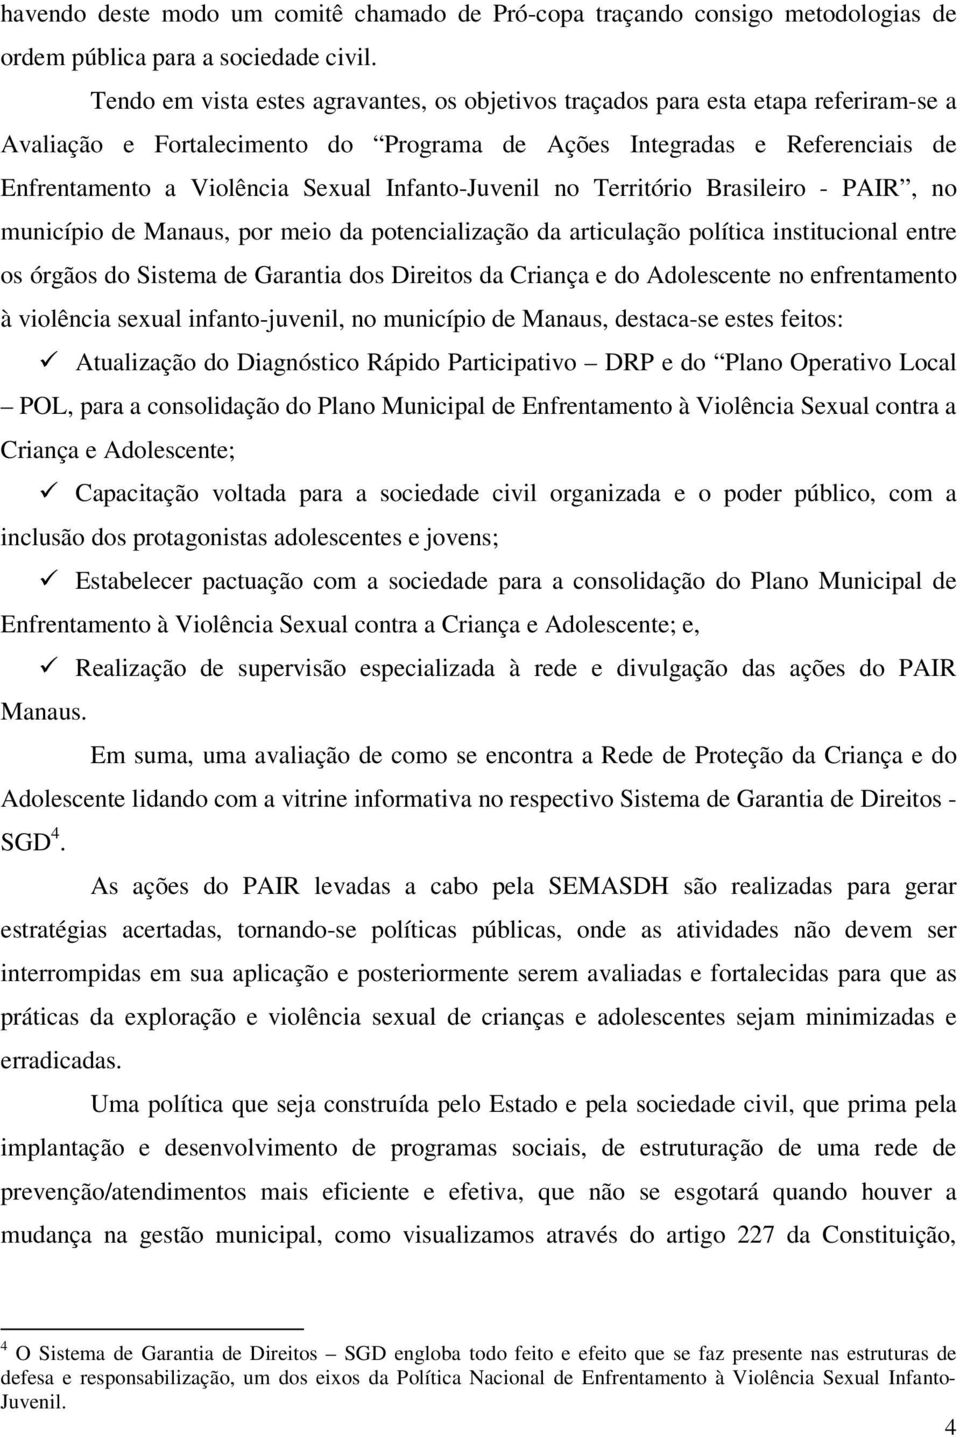 Infanto-Juvenil no Território Brasileiro - PAIR, no município de Manaus, por meio da potencialização da articulação política institucional entre os órgãos do Sistema de Garantia dos Direitos da